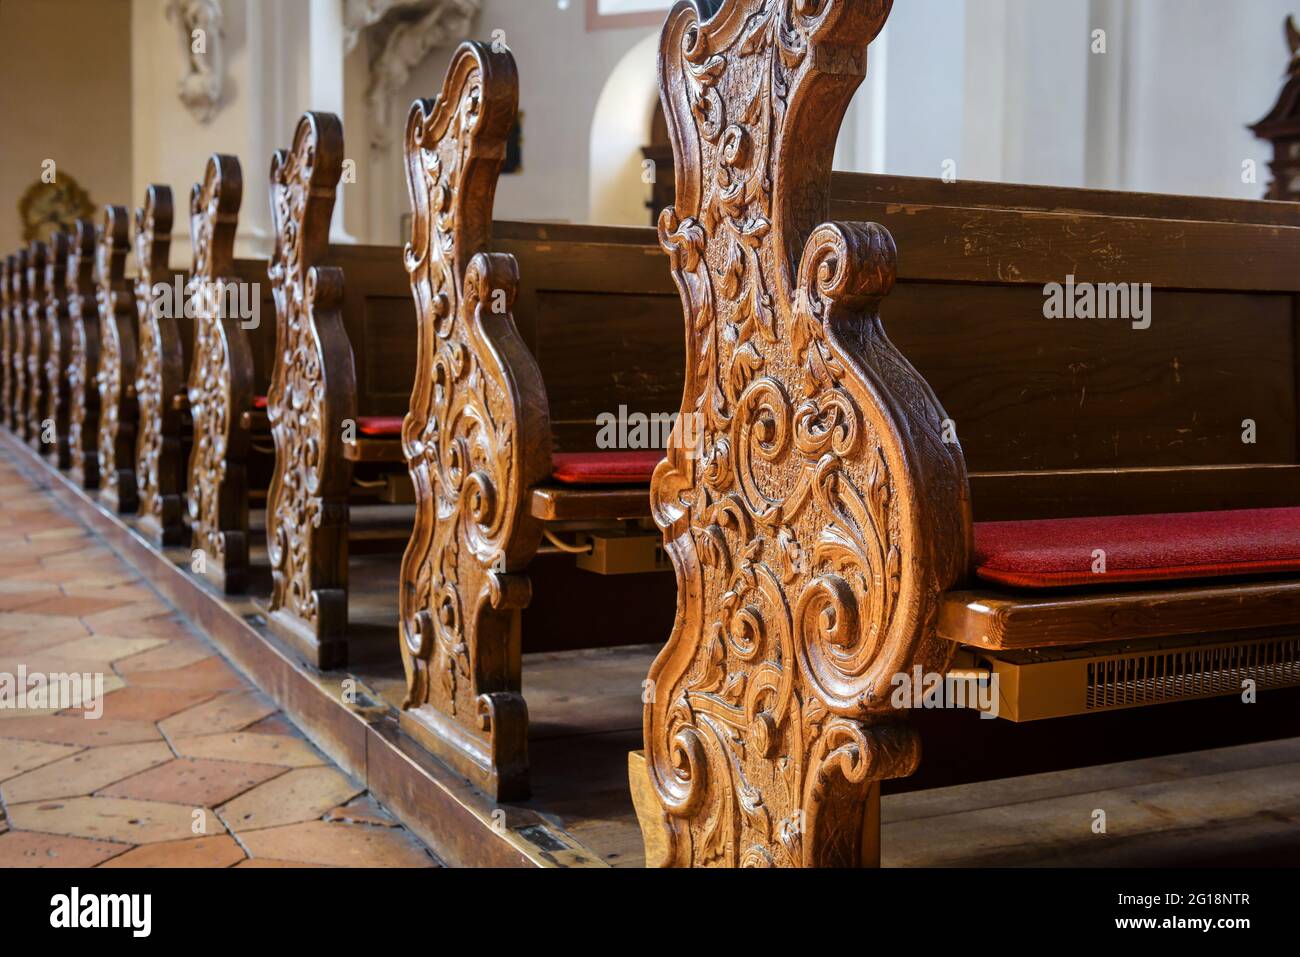 Ragoûts vides à l'intérieur de l'église, ragoûts en bois sculpté dans la cathédrale catholique, détail de l'intérieur de l'église chrétienne. Belles vieilles ragoûts, bancs de culte Banque D'Images